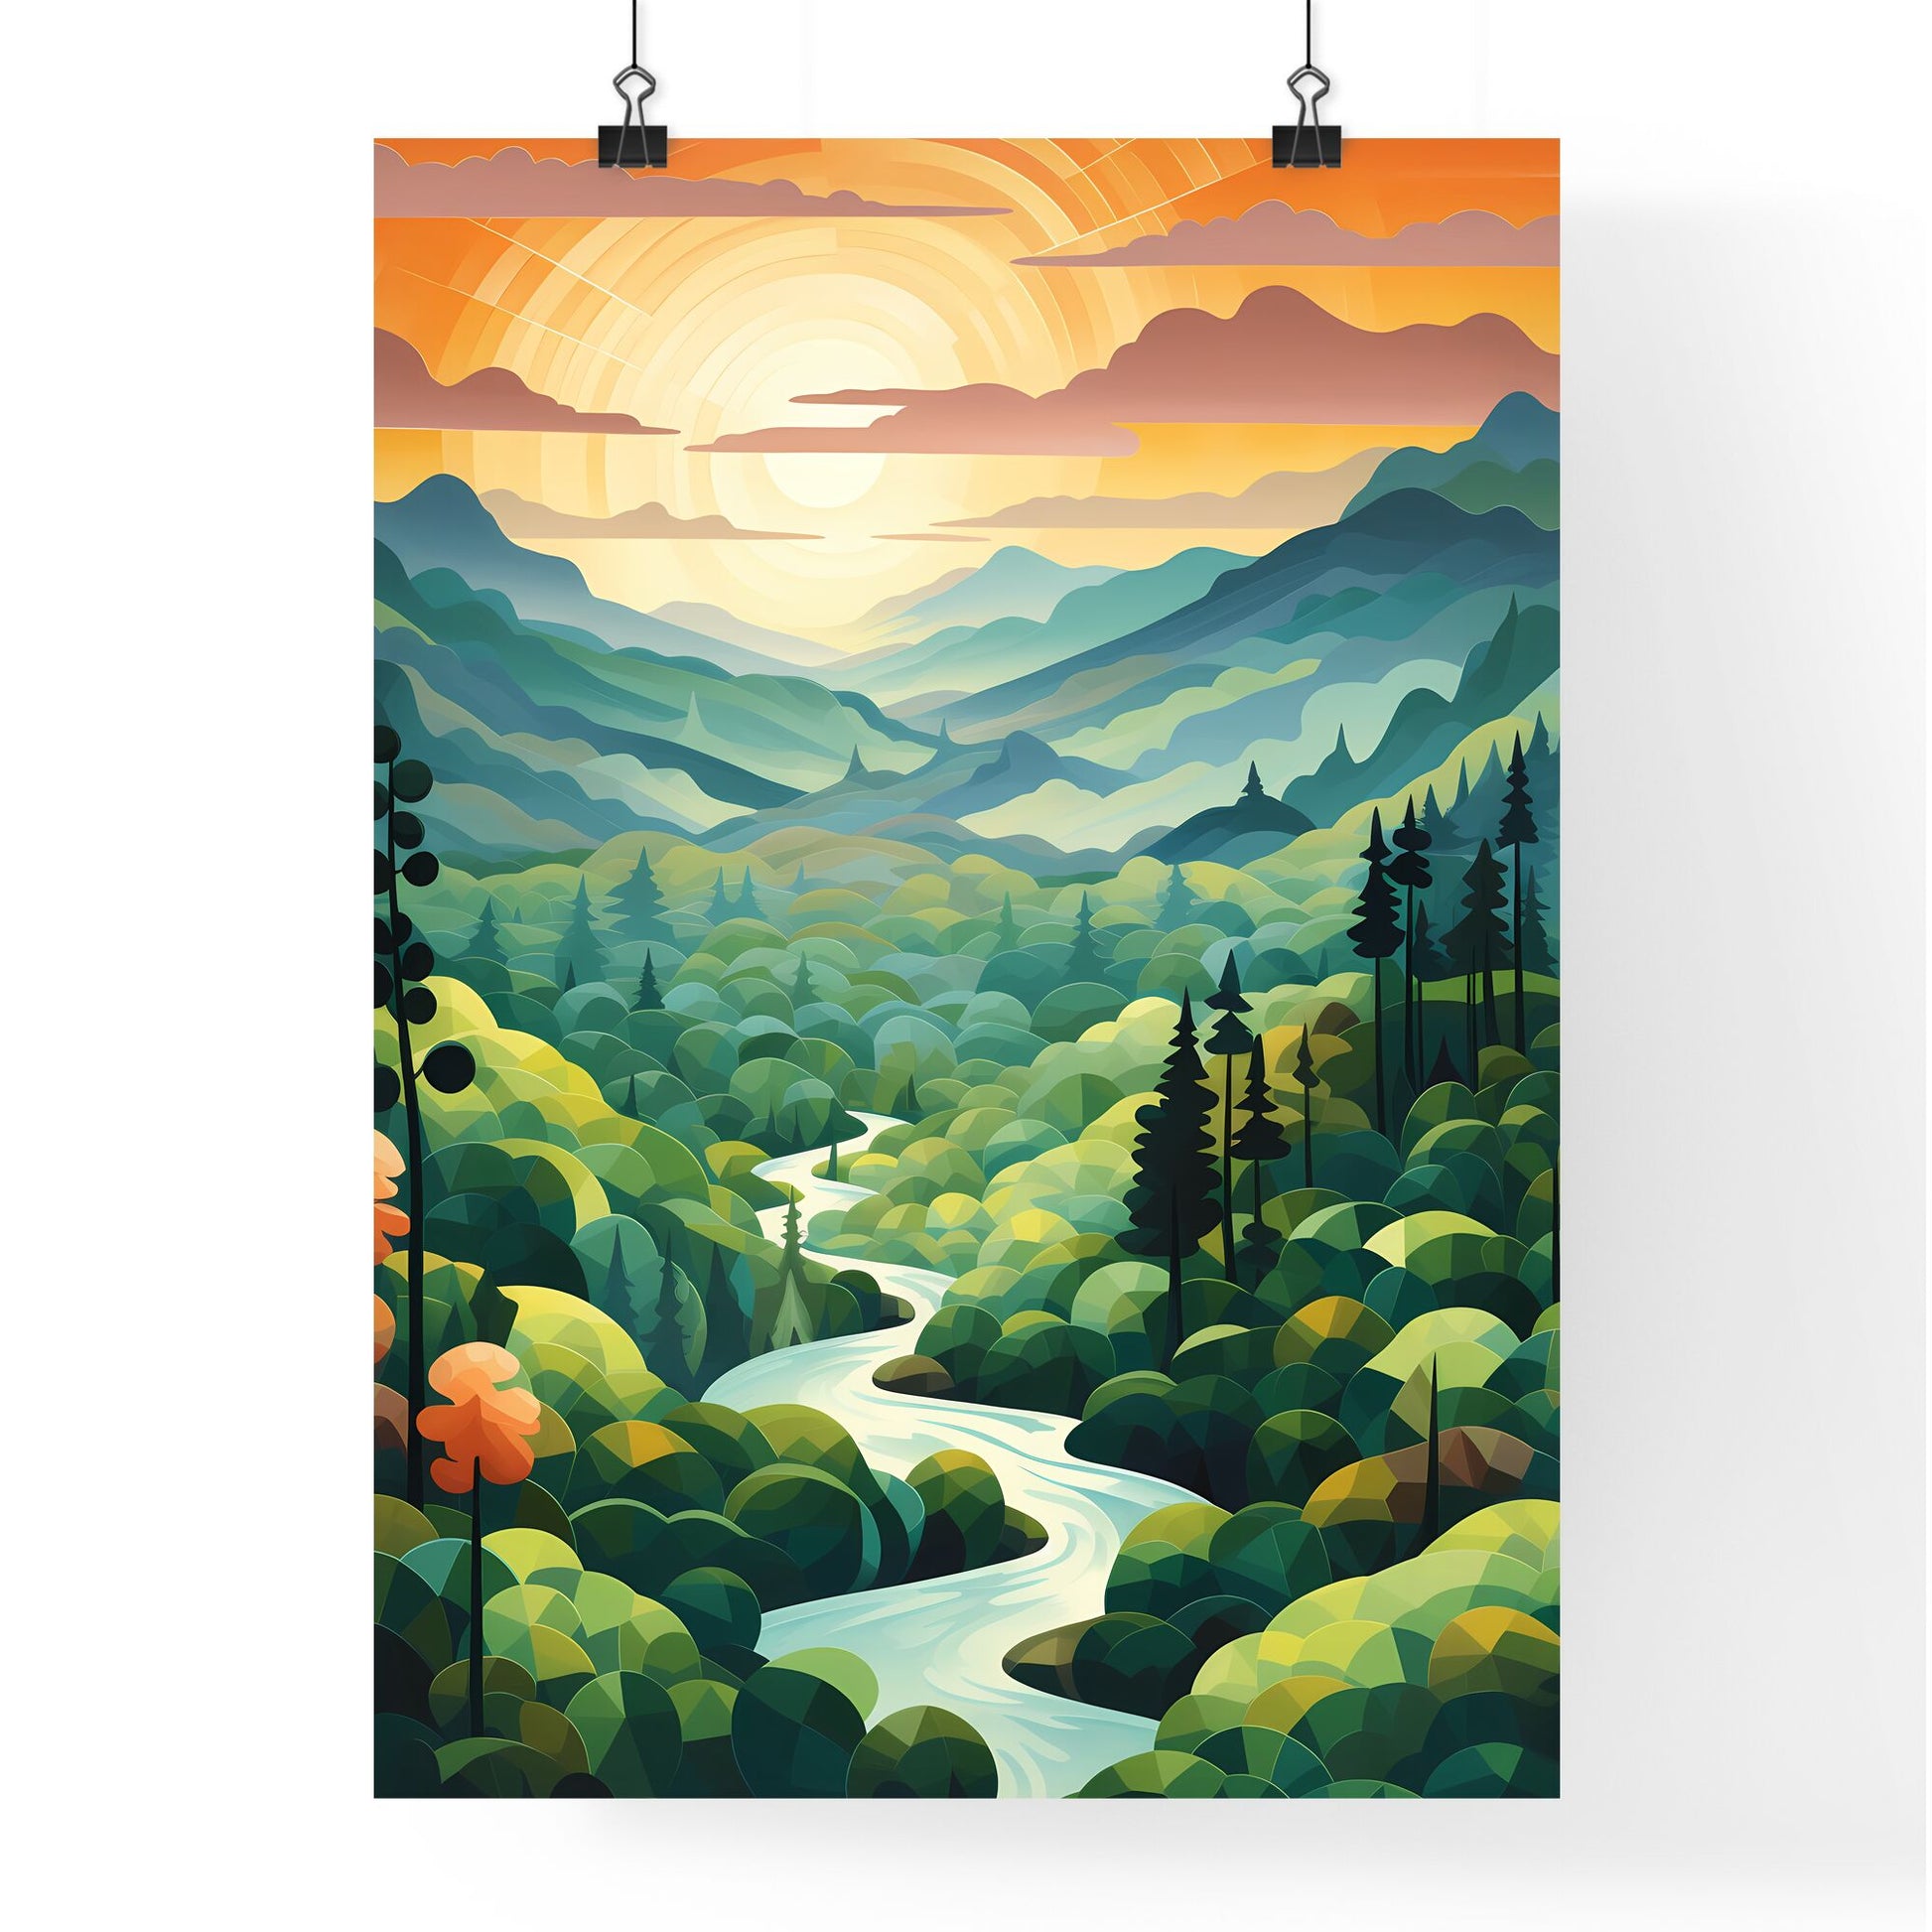 River Running Through A Forest Art Print Default Title